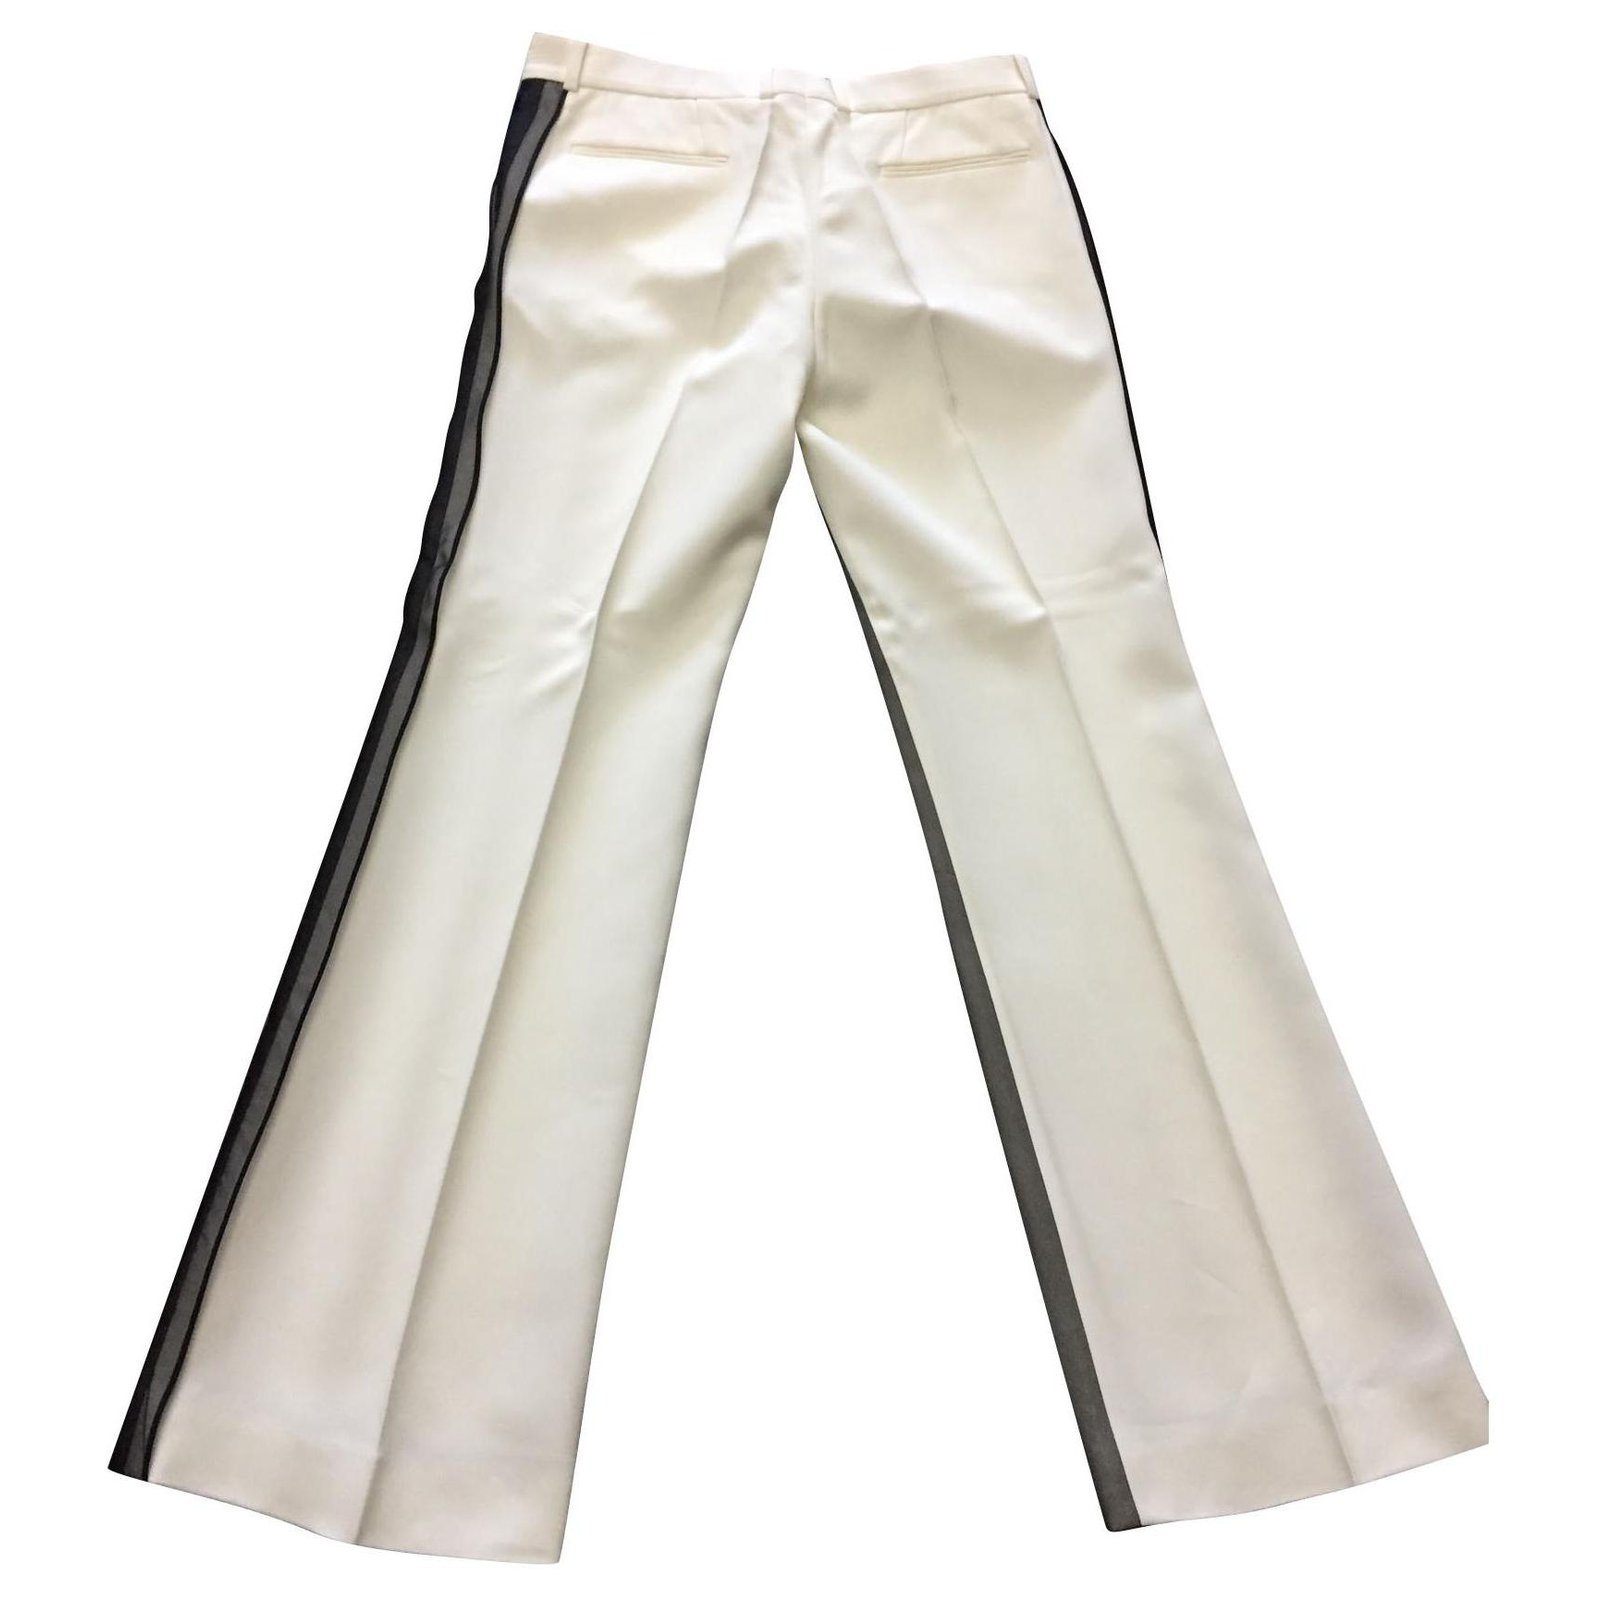 https://cdn1.jolicloset.com/imgr/full/2019/05/129577-1/celine-white-viscose-pants.jpg